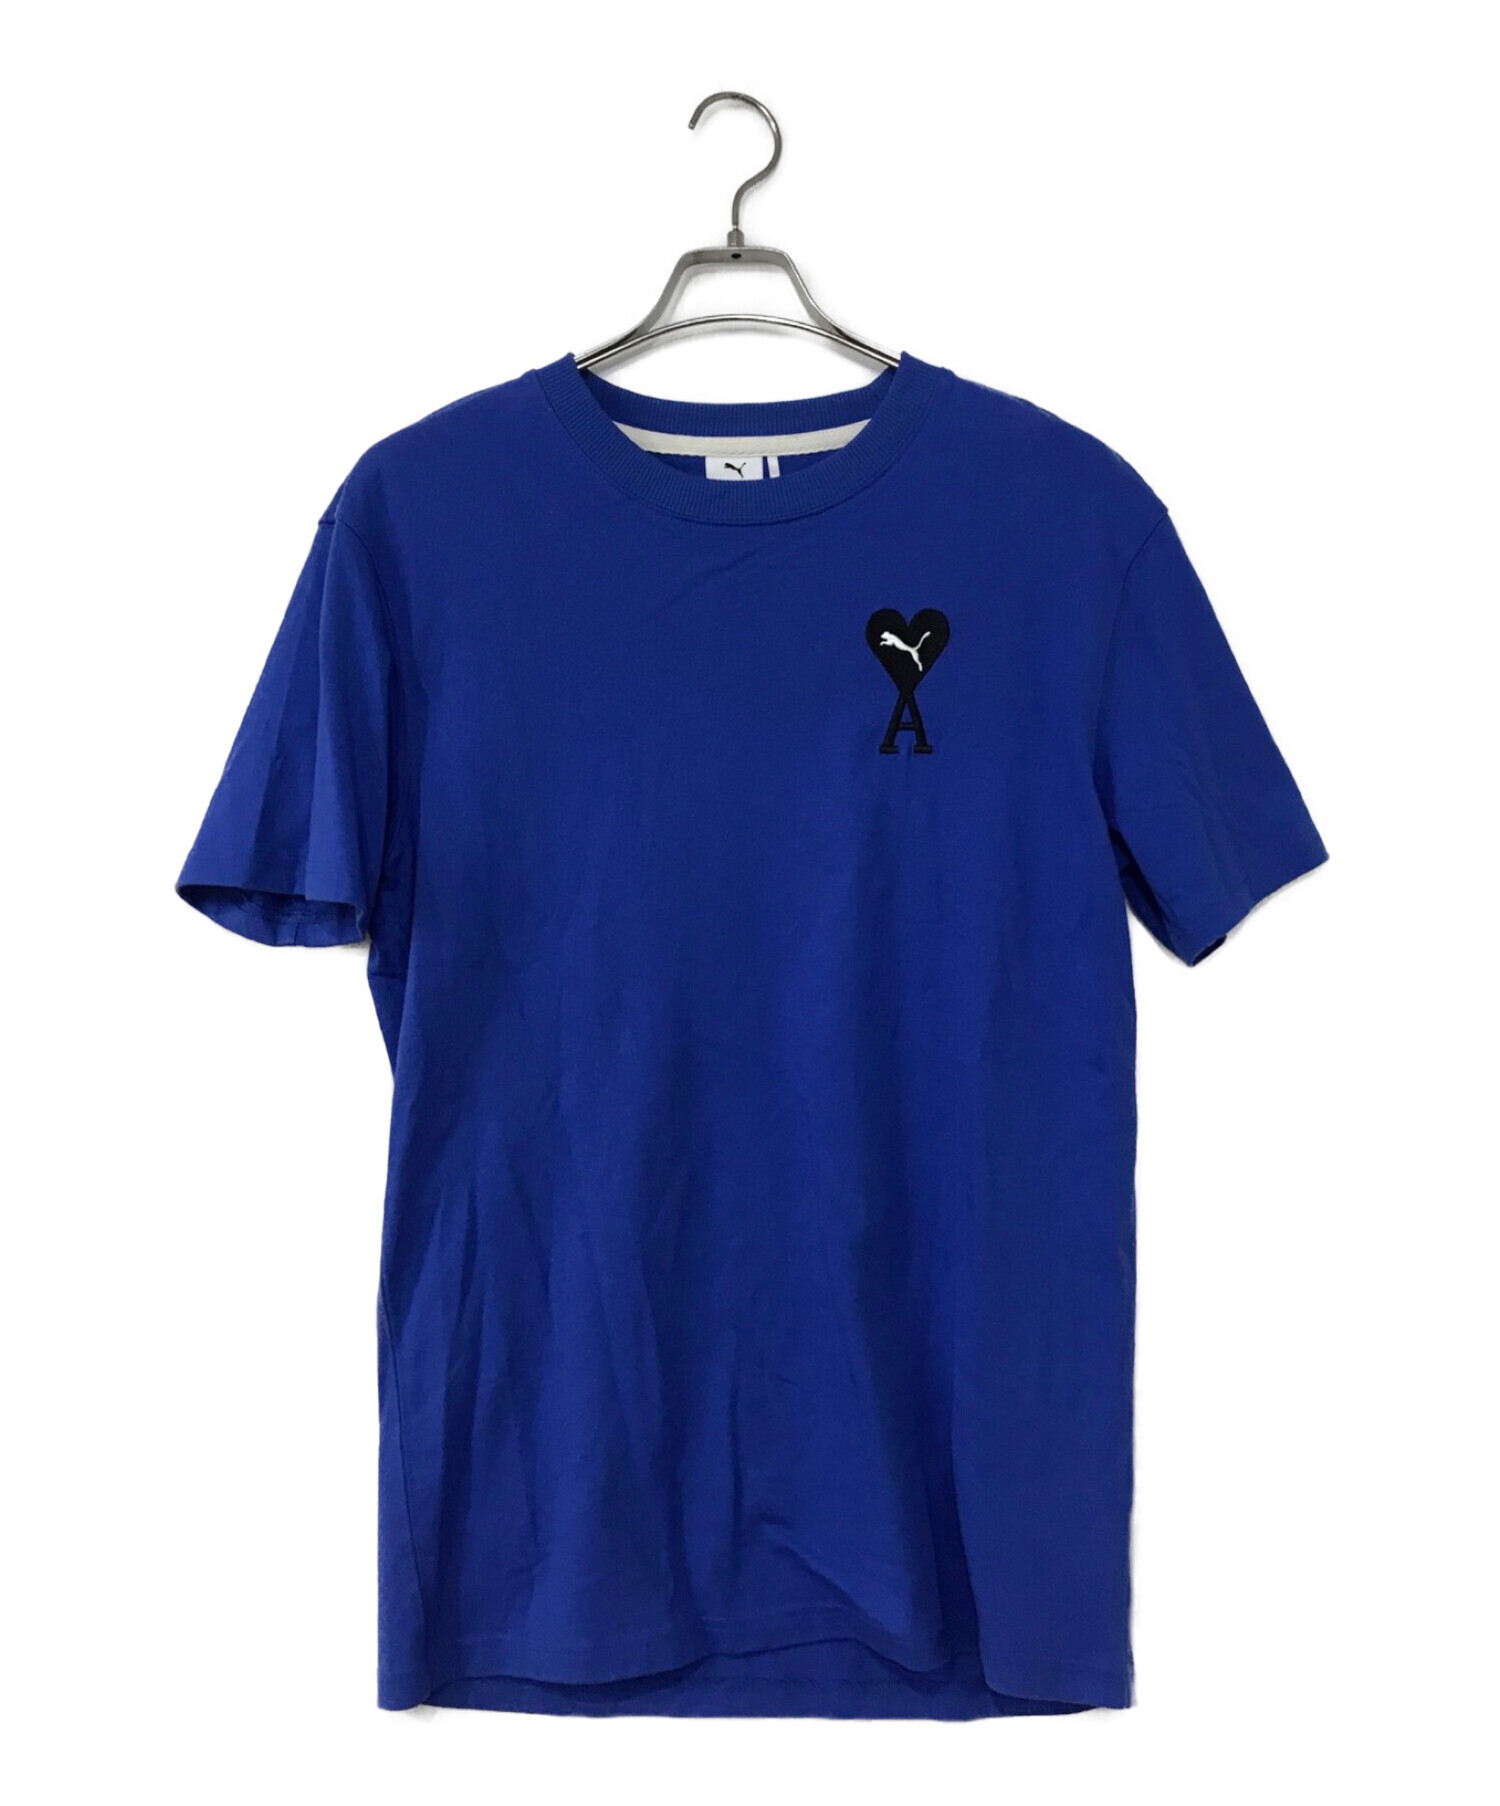 ユニセックス。AMIのTシャツ。ブルーSサイズ。 www.krzysztofbialy.com